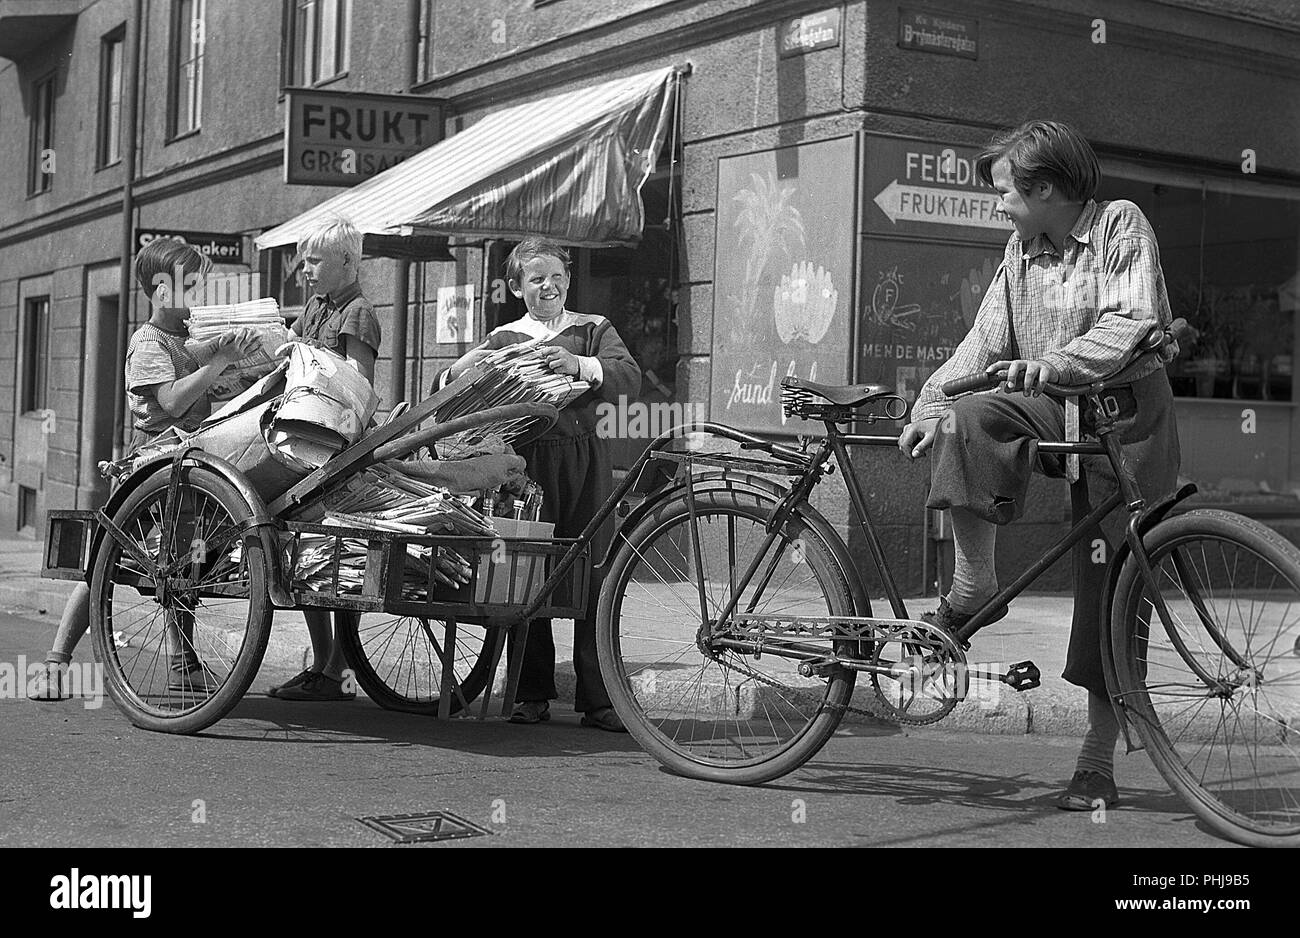 1940 enfants. Scène de l'Kvarterets olycksfågel 1947 film suédois. Les garçons travaillent très messangers comme location et faisant des livraisons à gagner de l'argent supplémentaire. Suède 1947 Banque D'Images